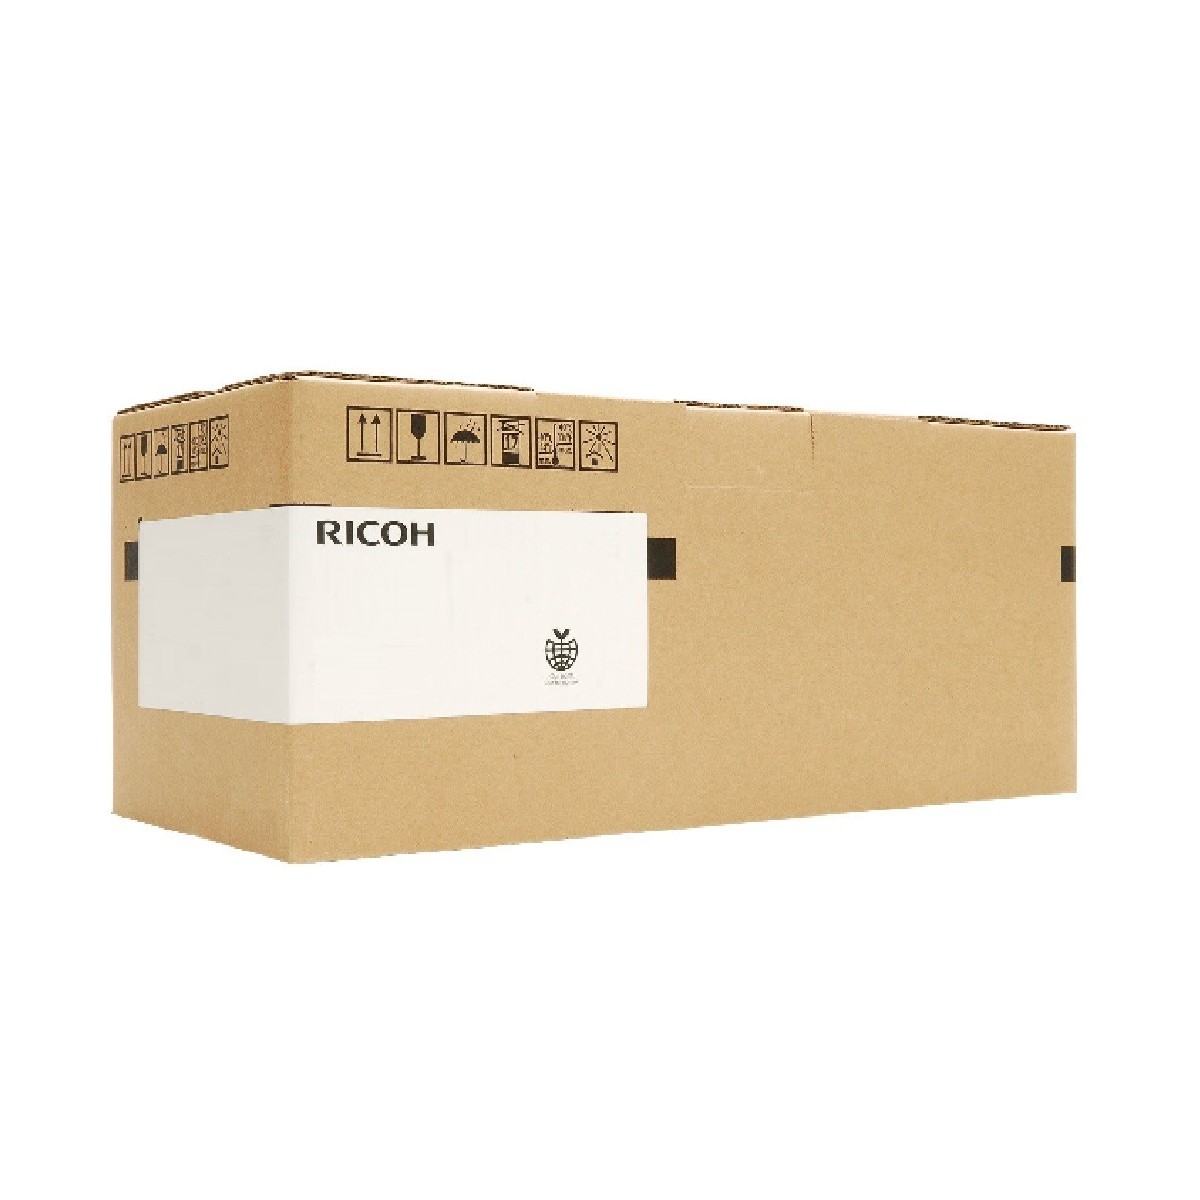 Ricoh B0822203 - Original - Ricoh - Aficio 2035 - 2035E - 2045 - 1 pc(s) - Black - 3 kg